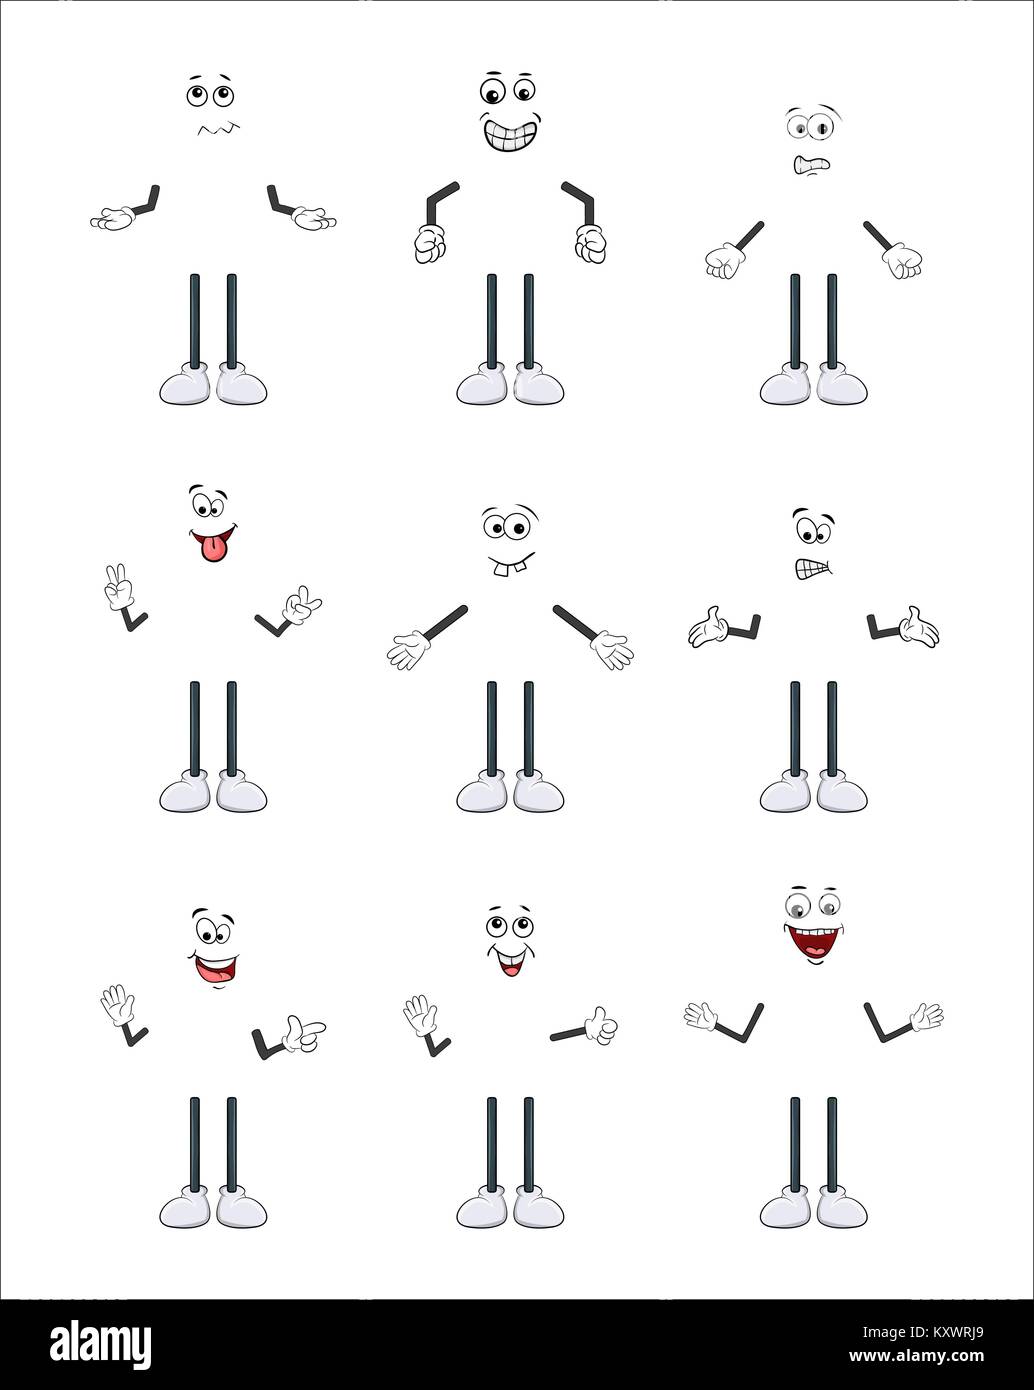 Personaggio dei fumetti braccio, gamba e affrontare insieme isolato su sfondo bianco Illustrazione Vettoriale